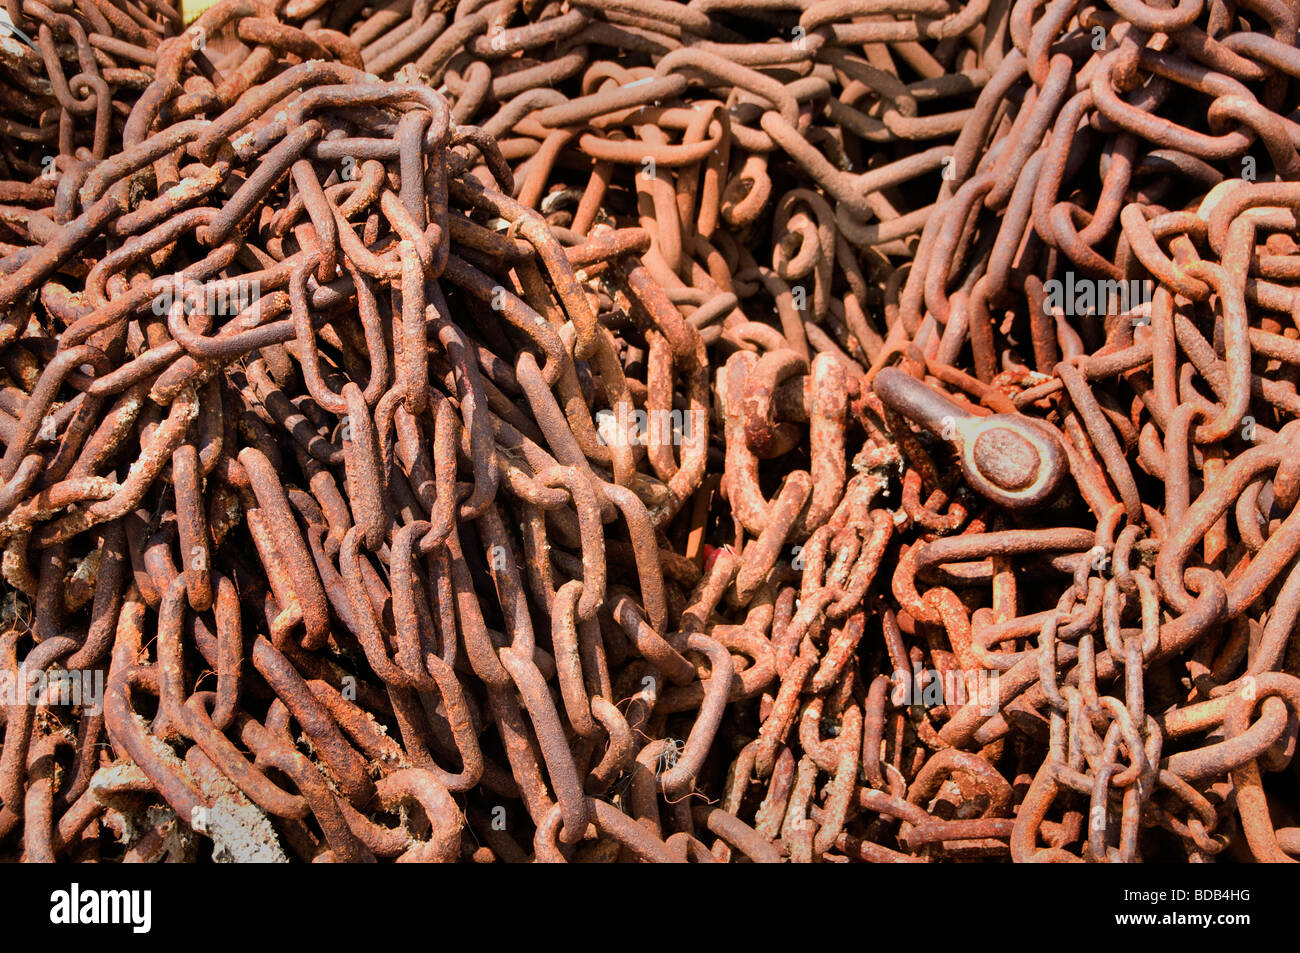 Texel Netherlands Oudeschild rust brown russet Chain Stock Photo